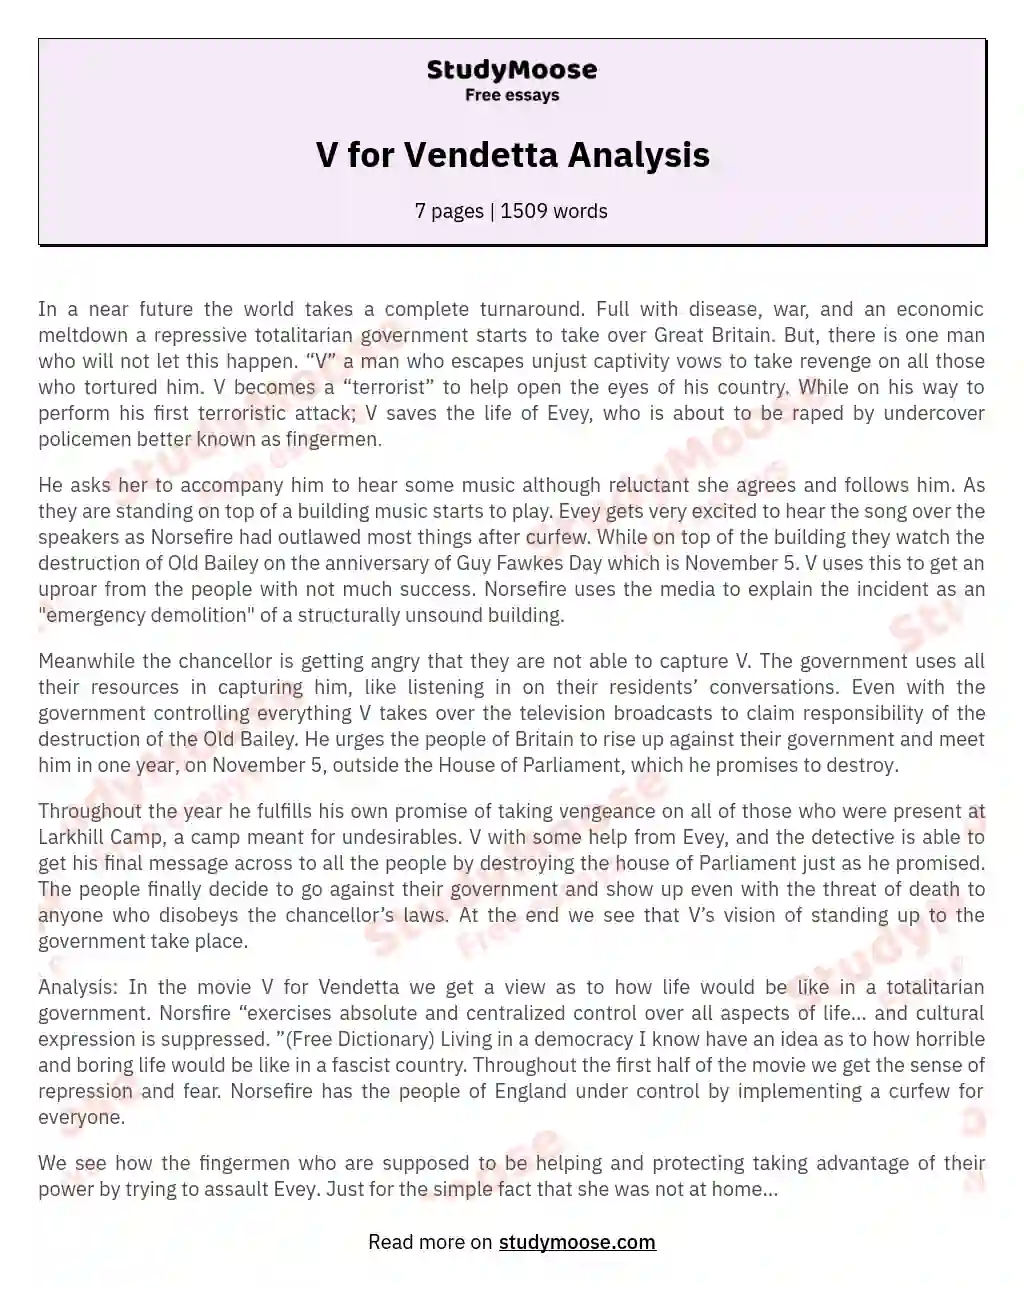 V for Vendetta Analysis essay